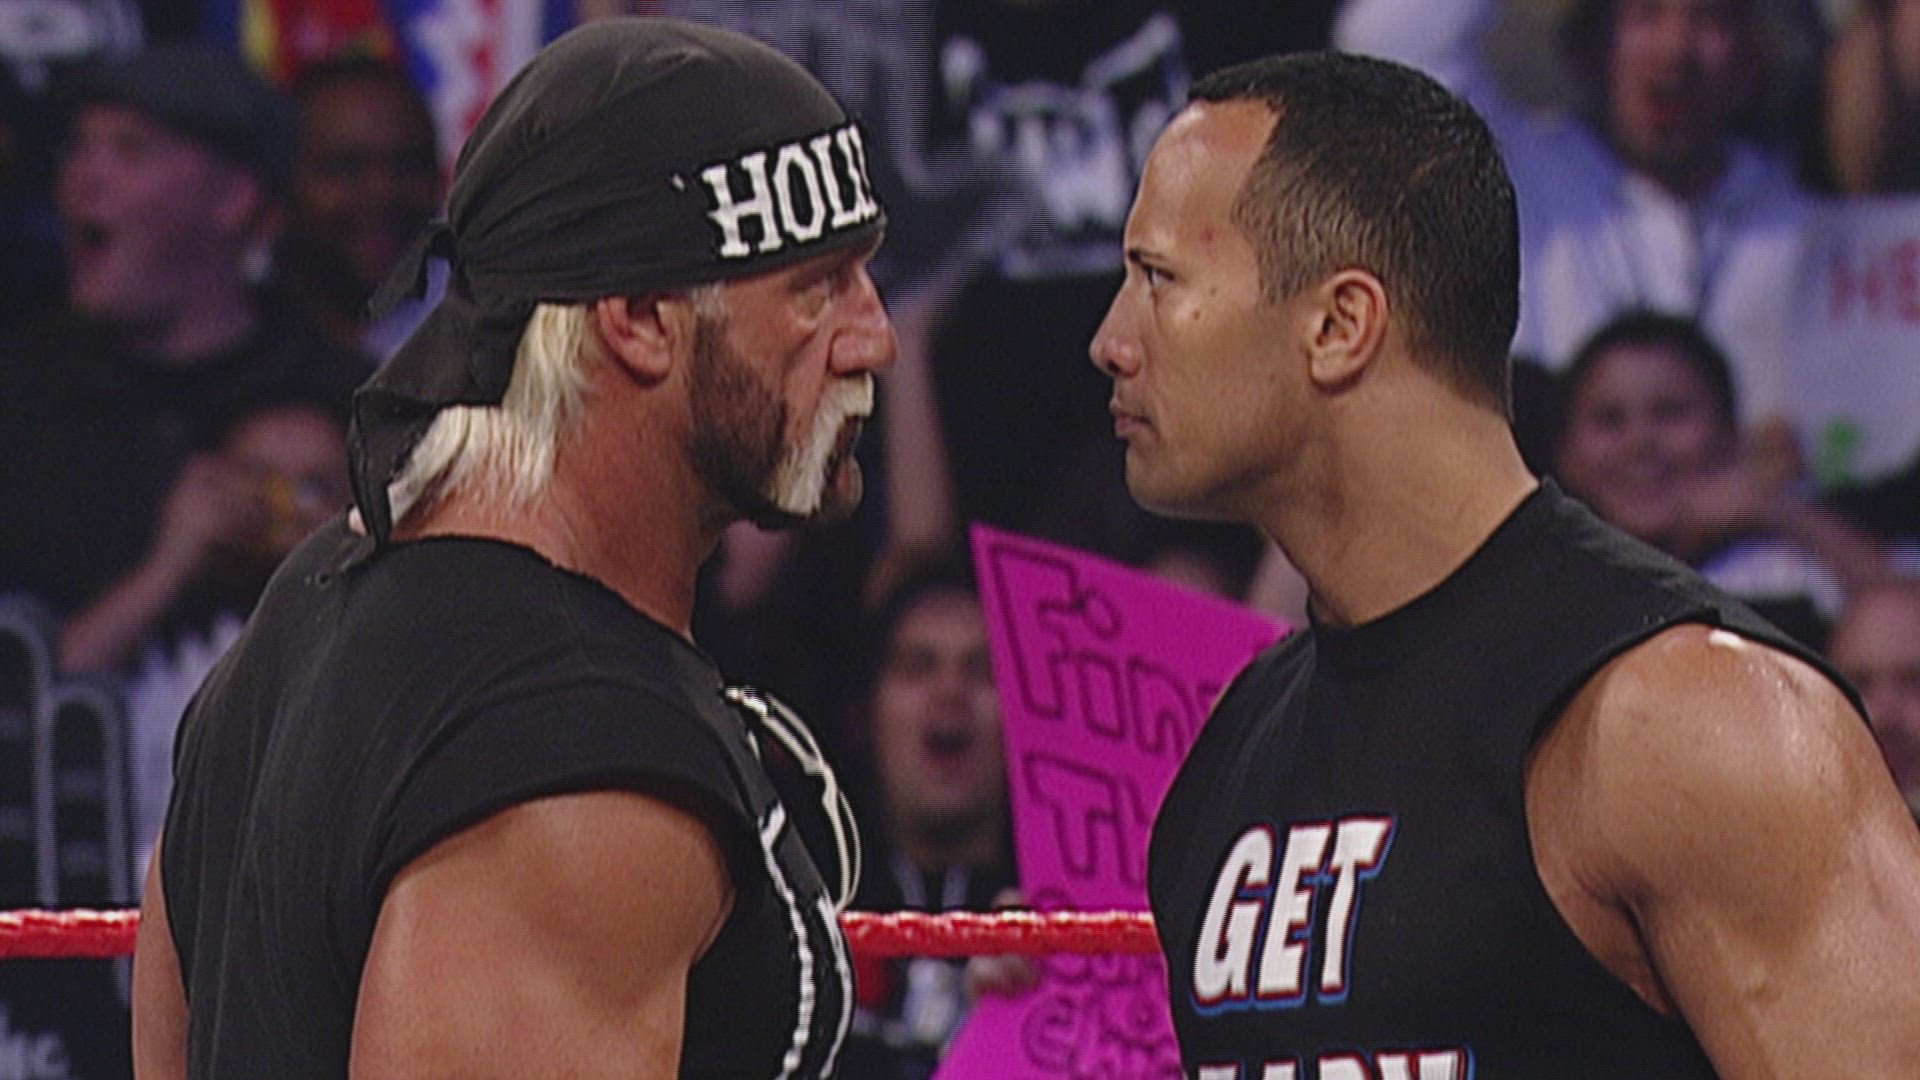 راک و هالک هوگن از بزرگترین ستارگان تاریخ کشتی کج و کمپانی WWE که در رسلمنیا سال 2001 برابر هم قرار گرفتند.